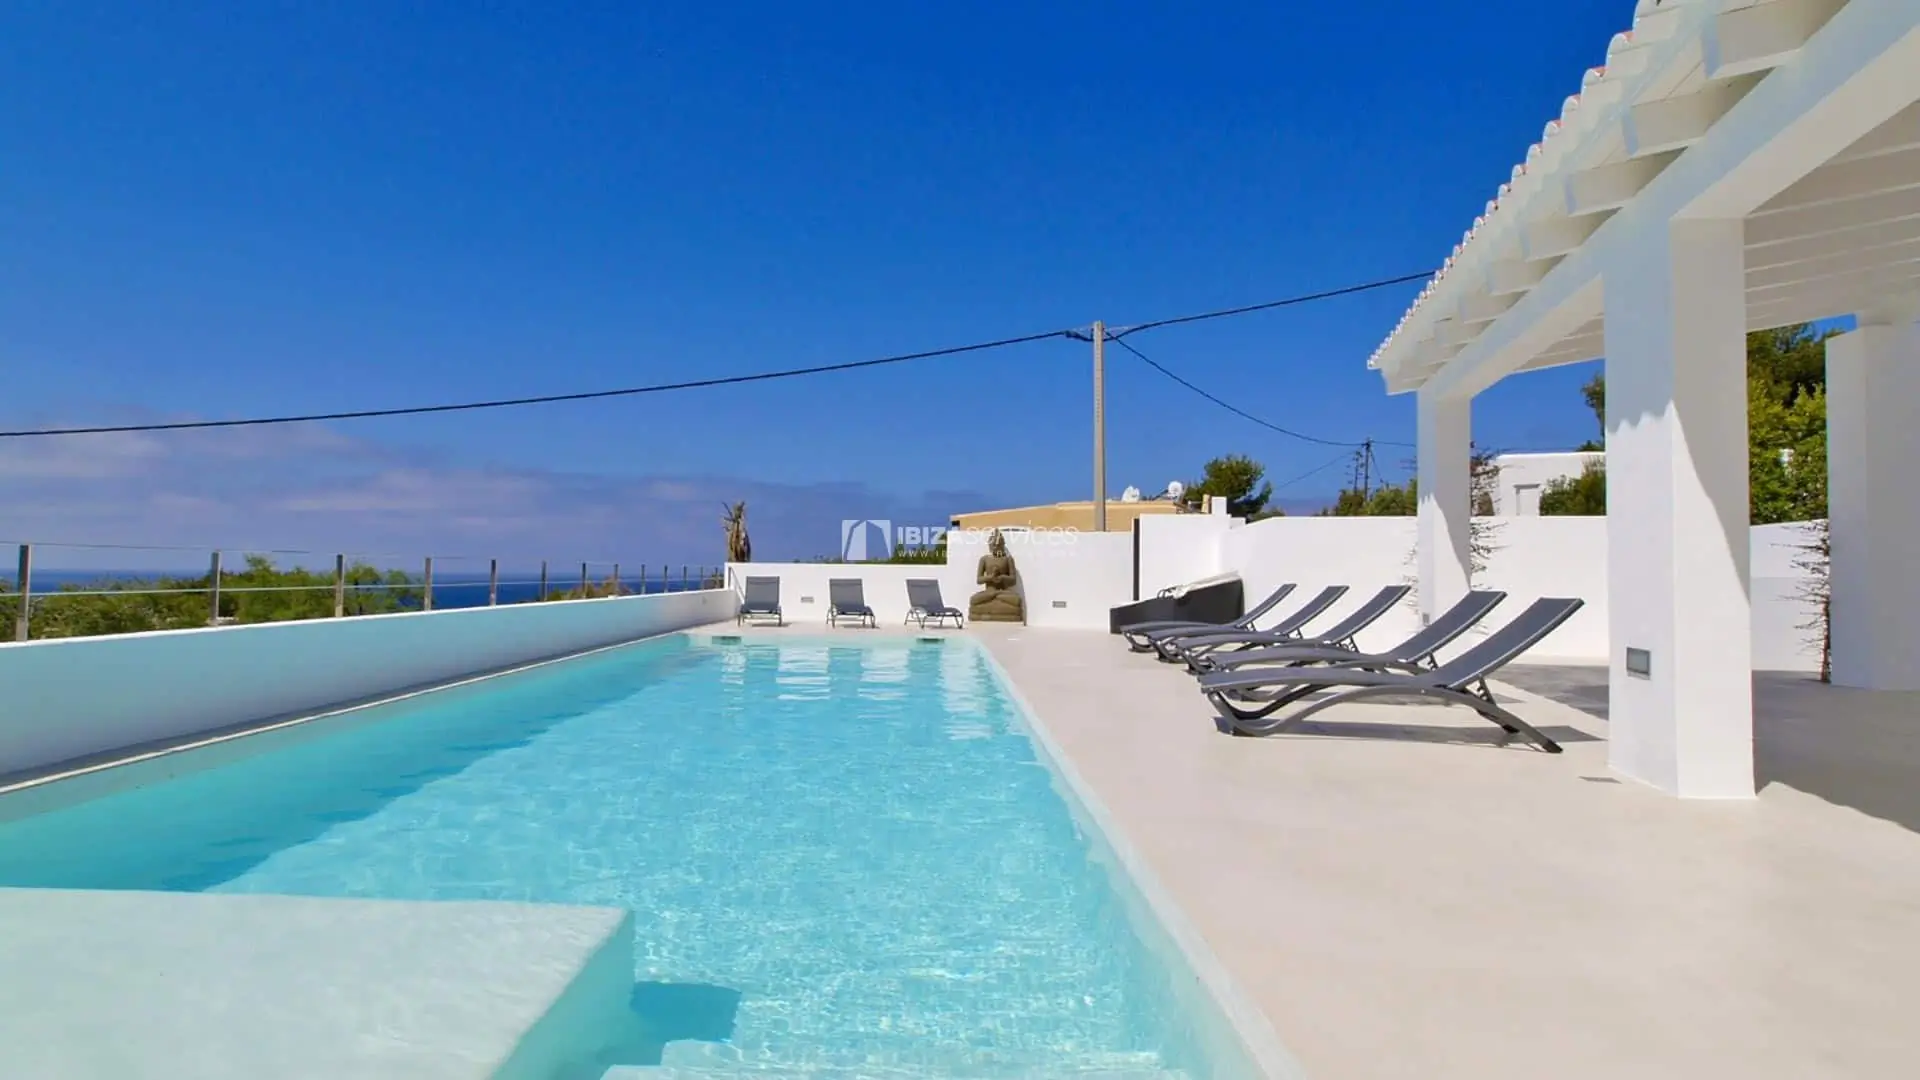 Confortable villa vistas al mar pocos pasos de la playa  alquiler anual zona Sant Josep